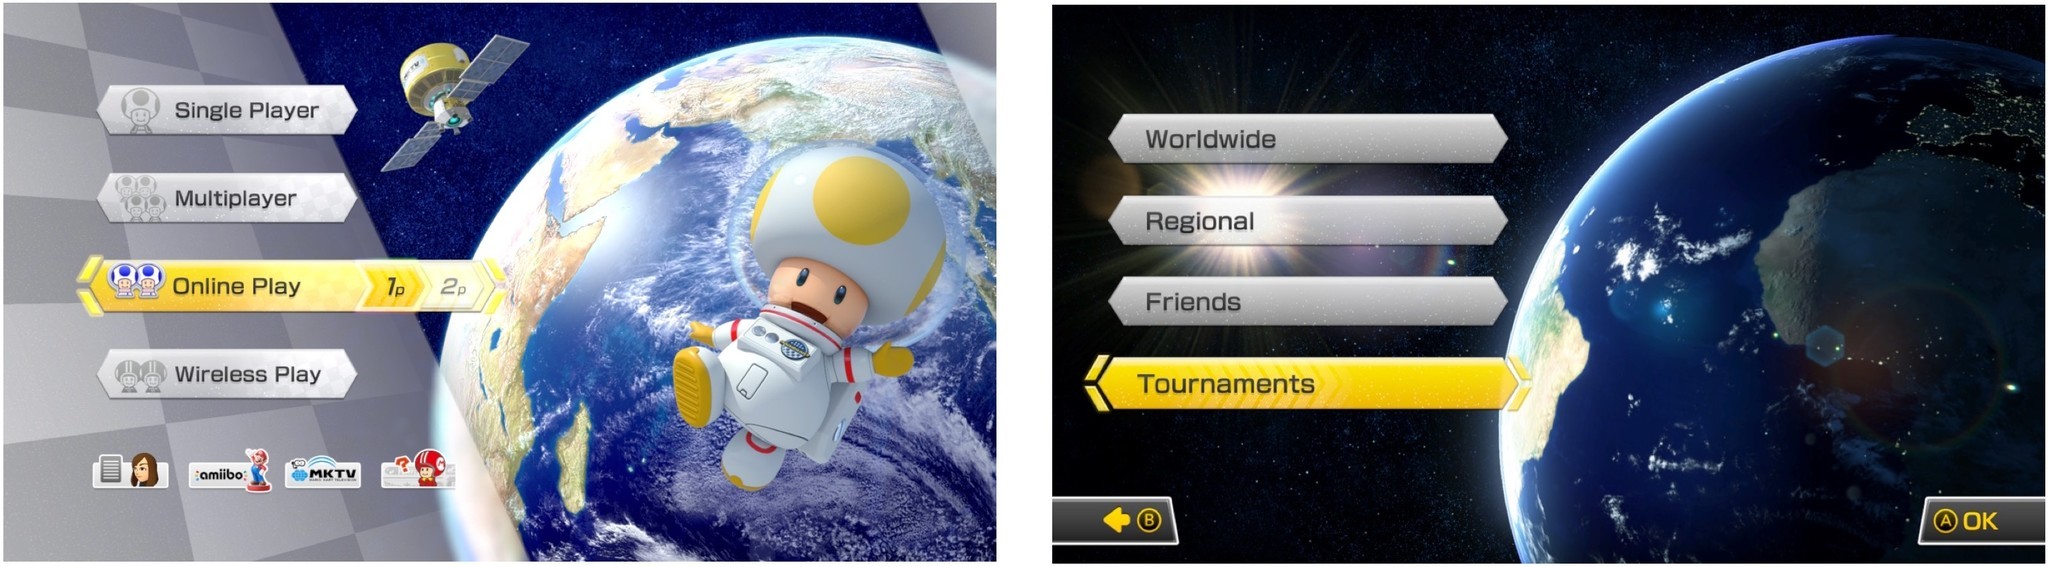 Online tournaments for Mario Kart 8 Deluxe